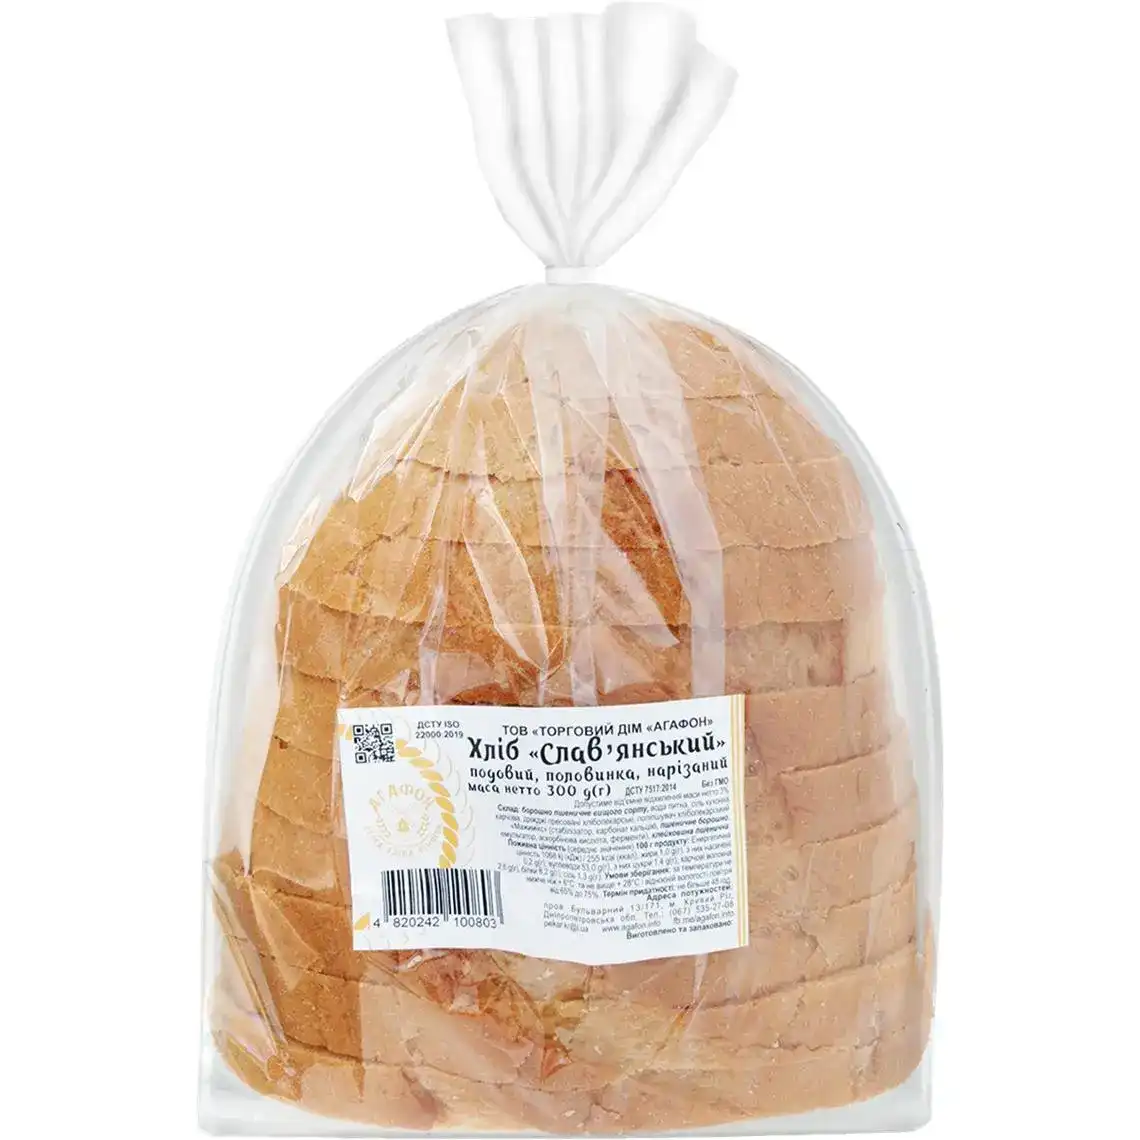 Хліб Агафон Словянський пшеничний нарізний 300 г